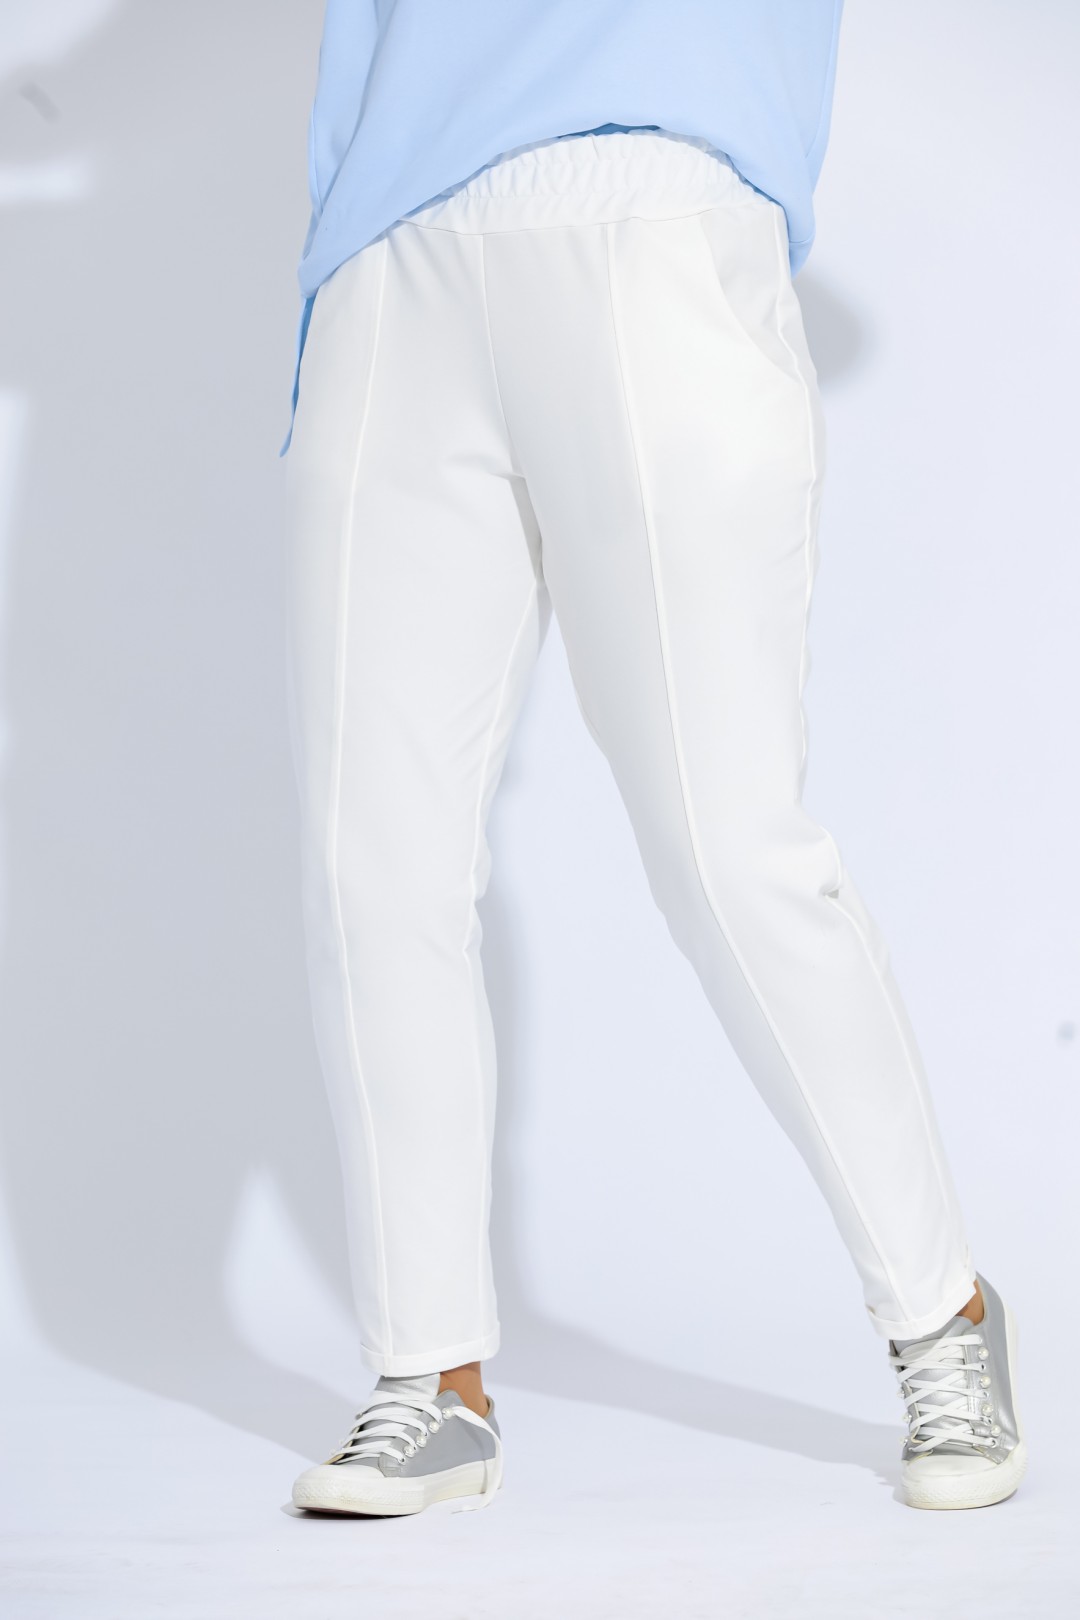 Костюм BegiModa 3006 голубая блуза+ молочные брюки